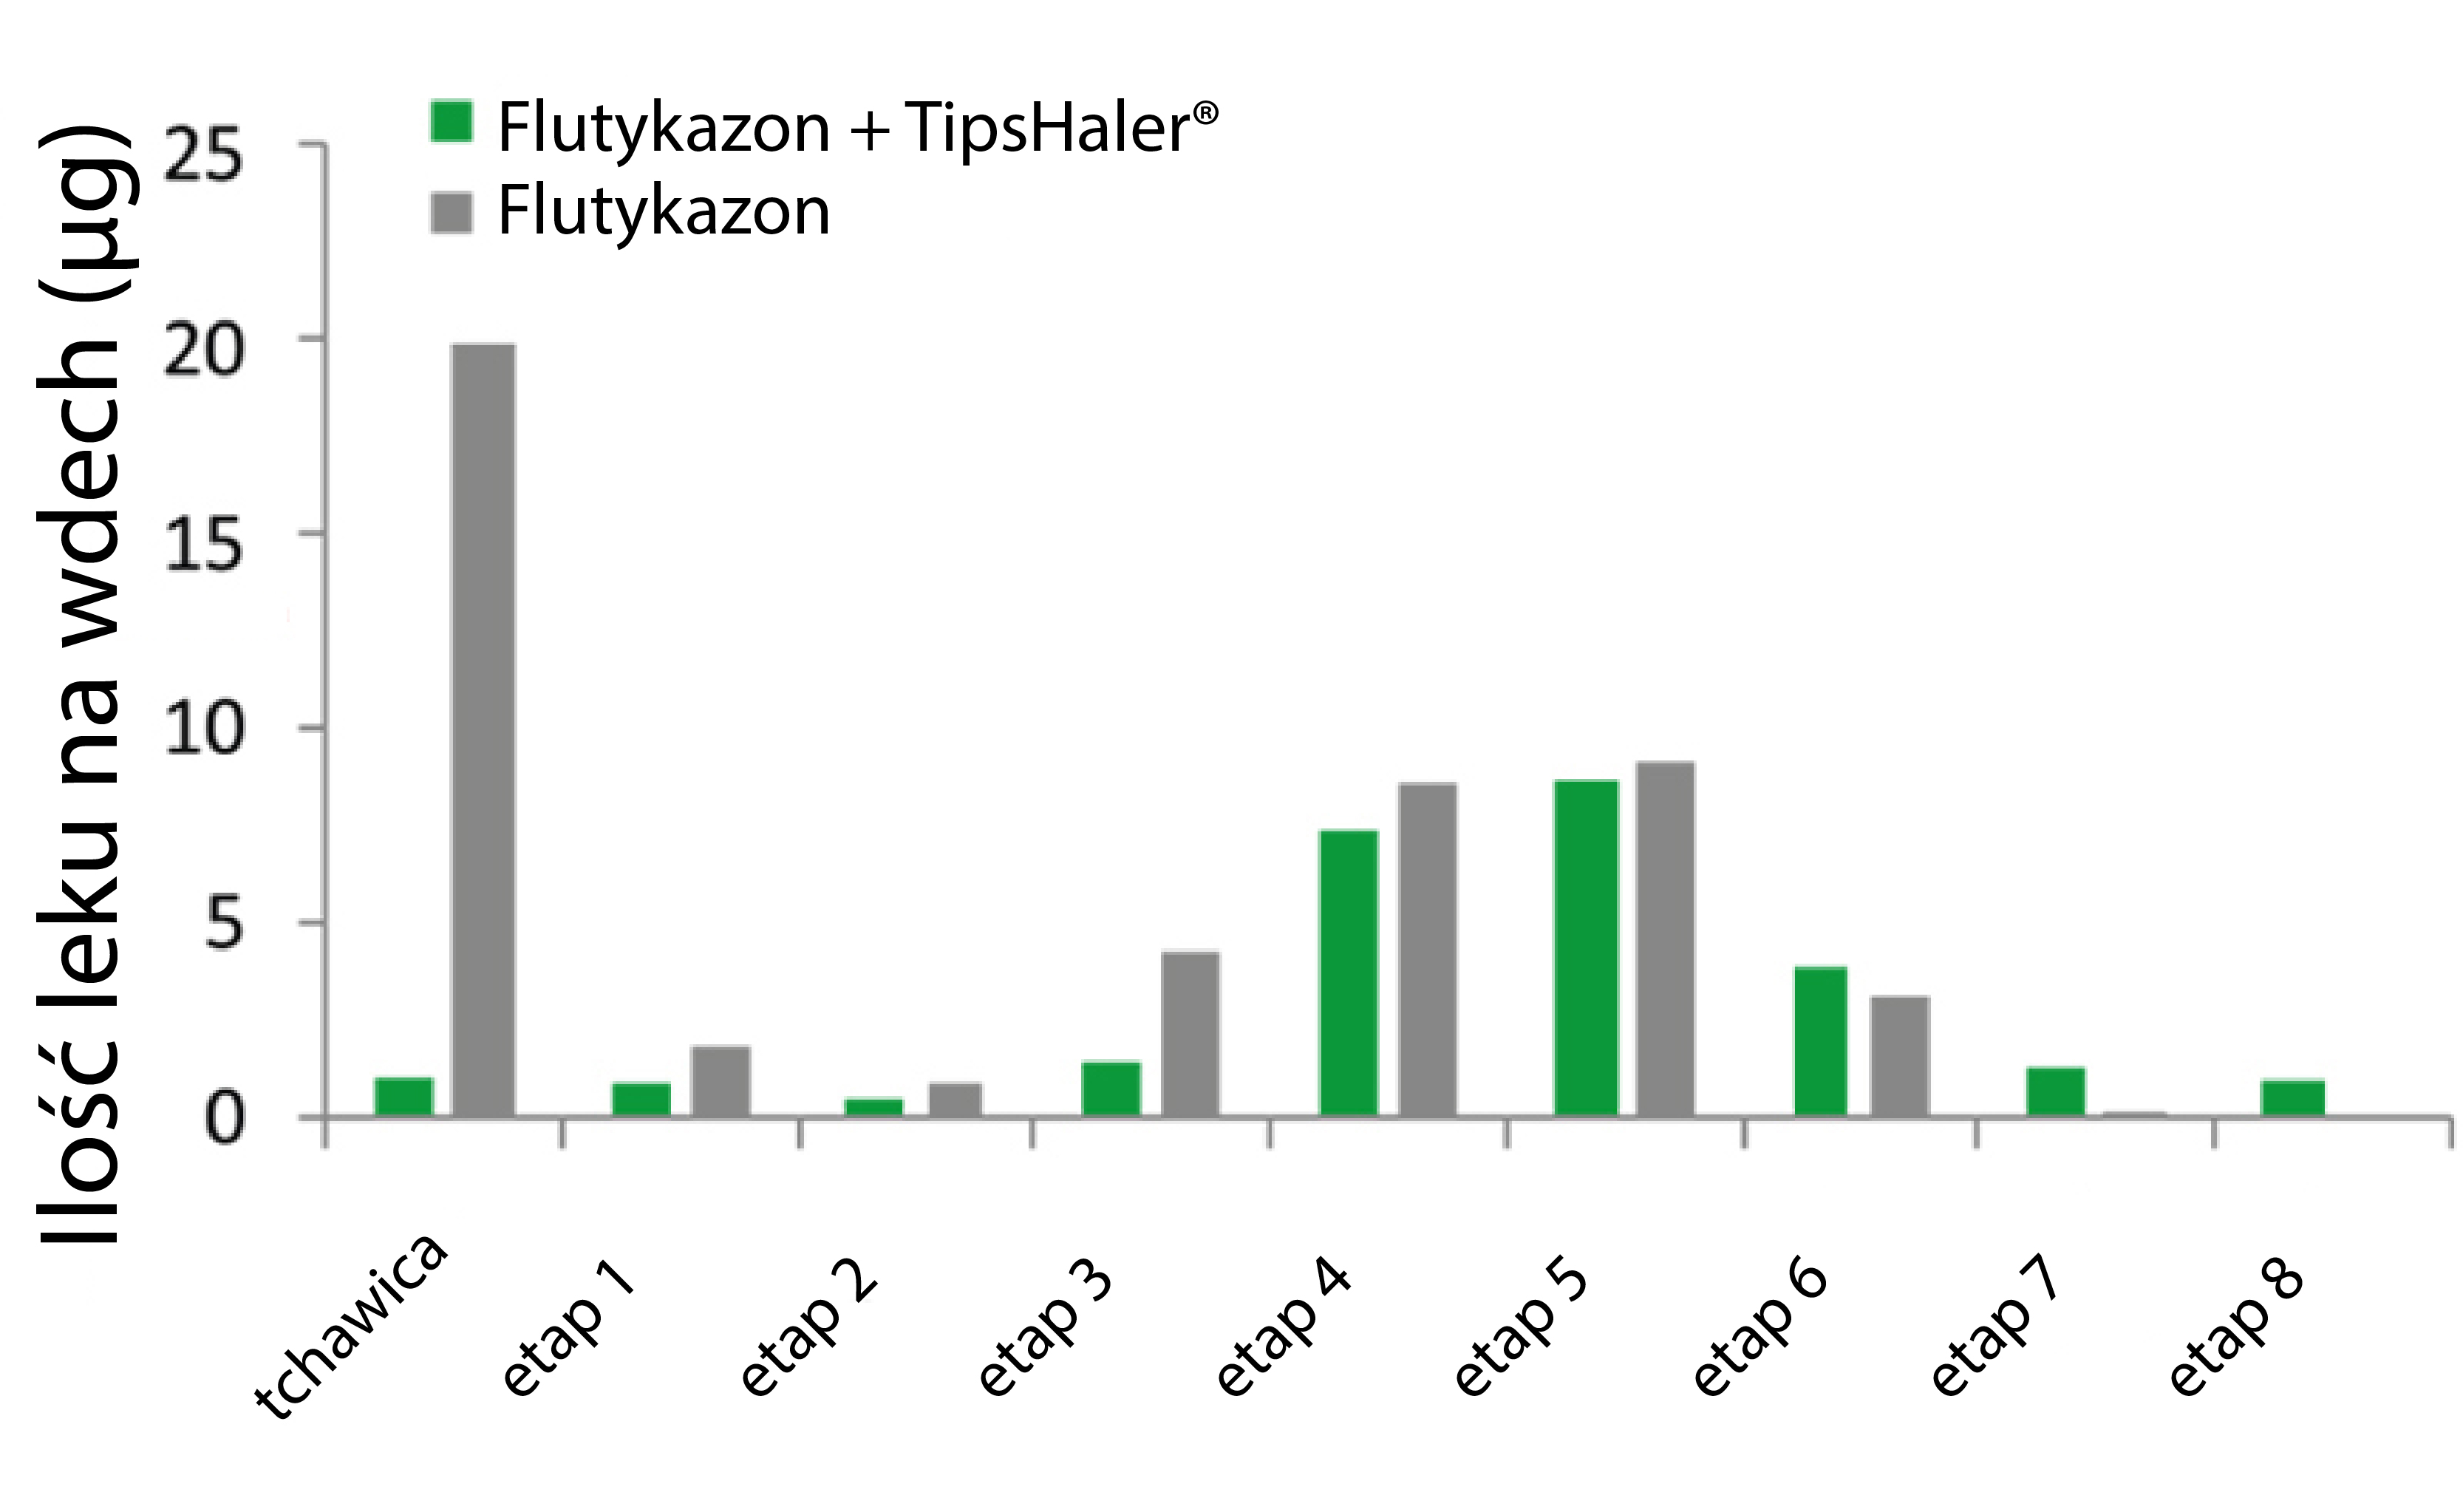 Ilość leku na wdech - wykres Tipshaler z flutykazonem versus sam flutykazon